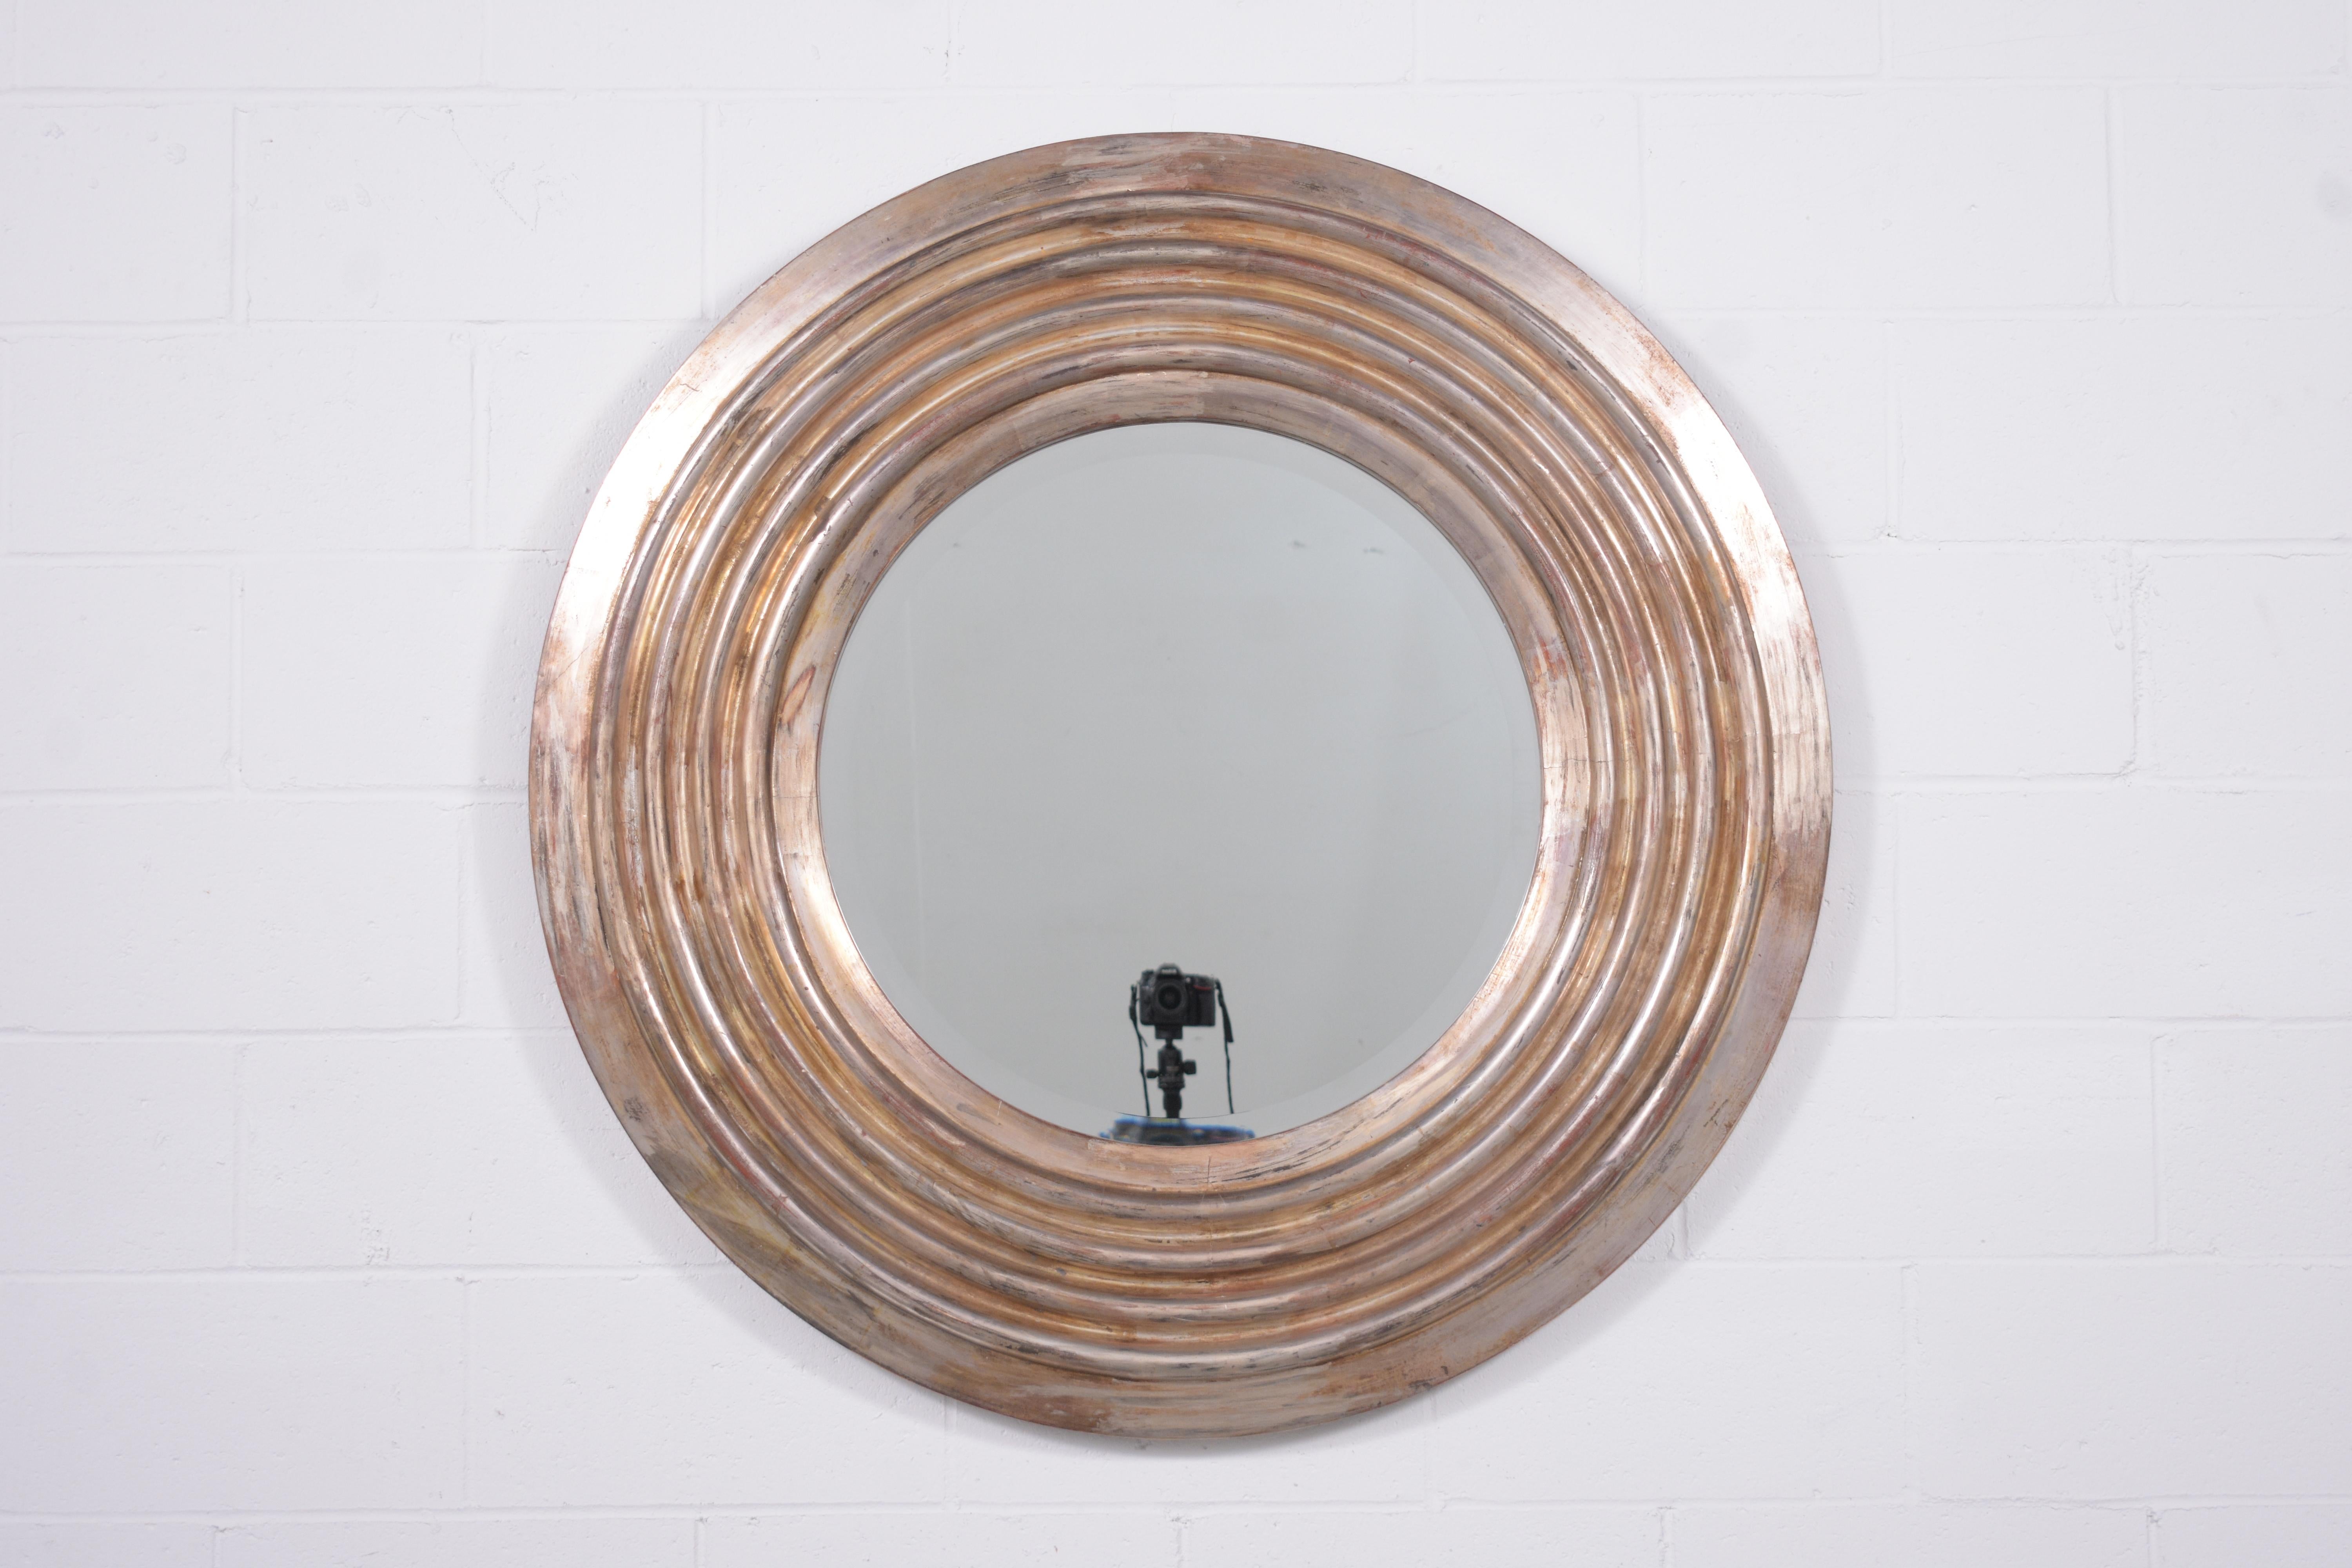 Découvrez le raffinement de l'art italien avec notre miroir mural circulaire italien récemment restauré. Cette pièce est une vitrine des compétences exceptionnelles de nos artisans internes, incarnant l'élégance et le design complexe synonymes de